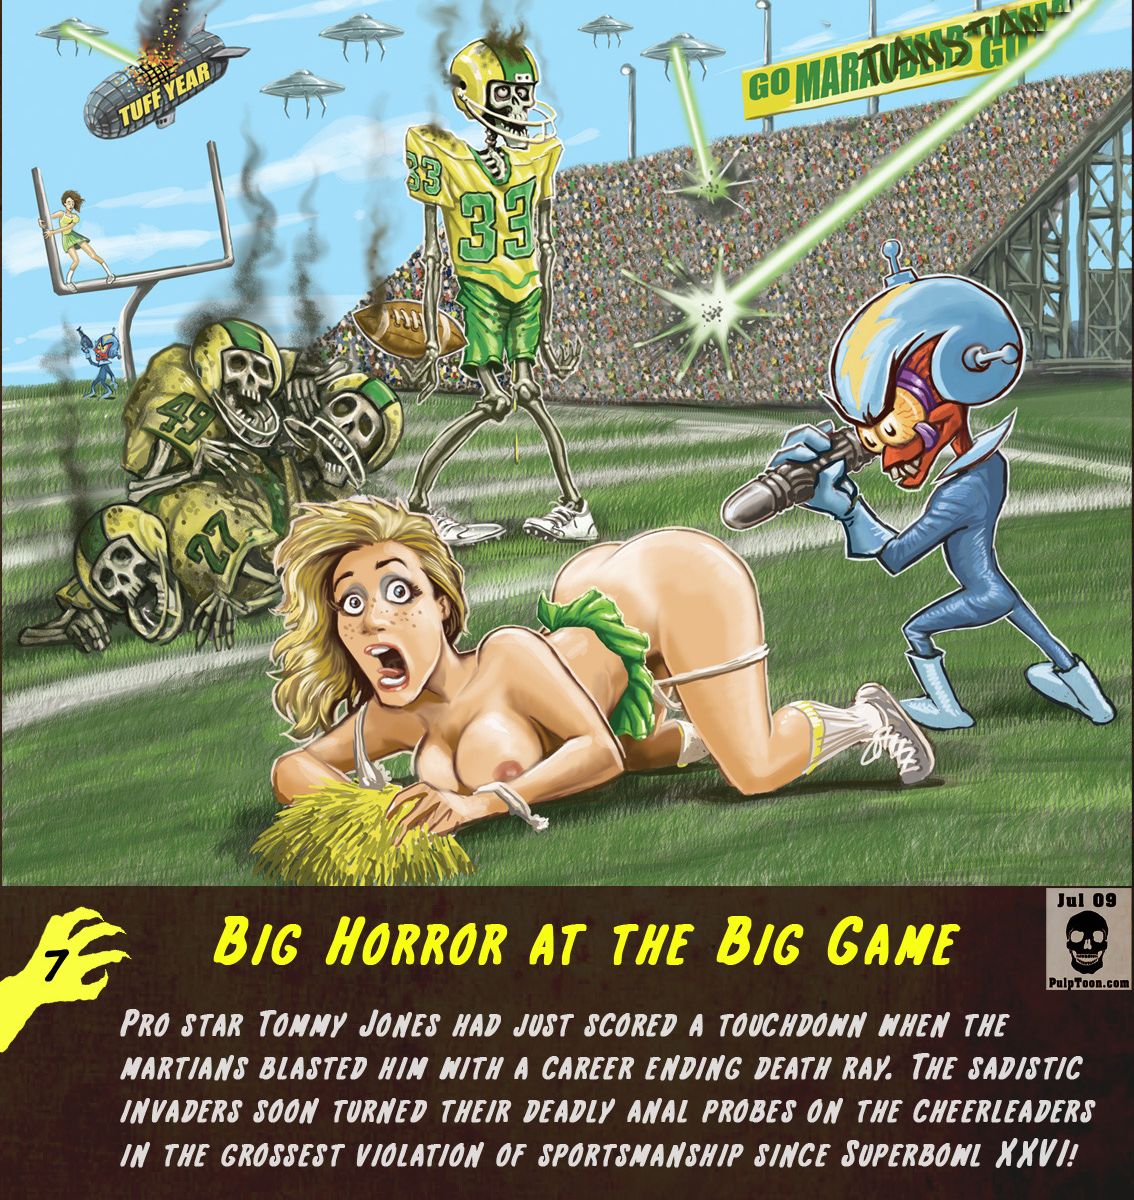 порно с монстрами, инопланетяне напавшие на футболистов втыкают странное устройство а попу чирлидерши